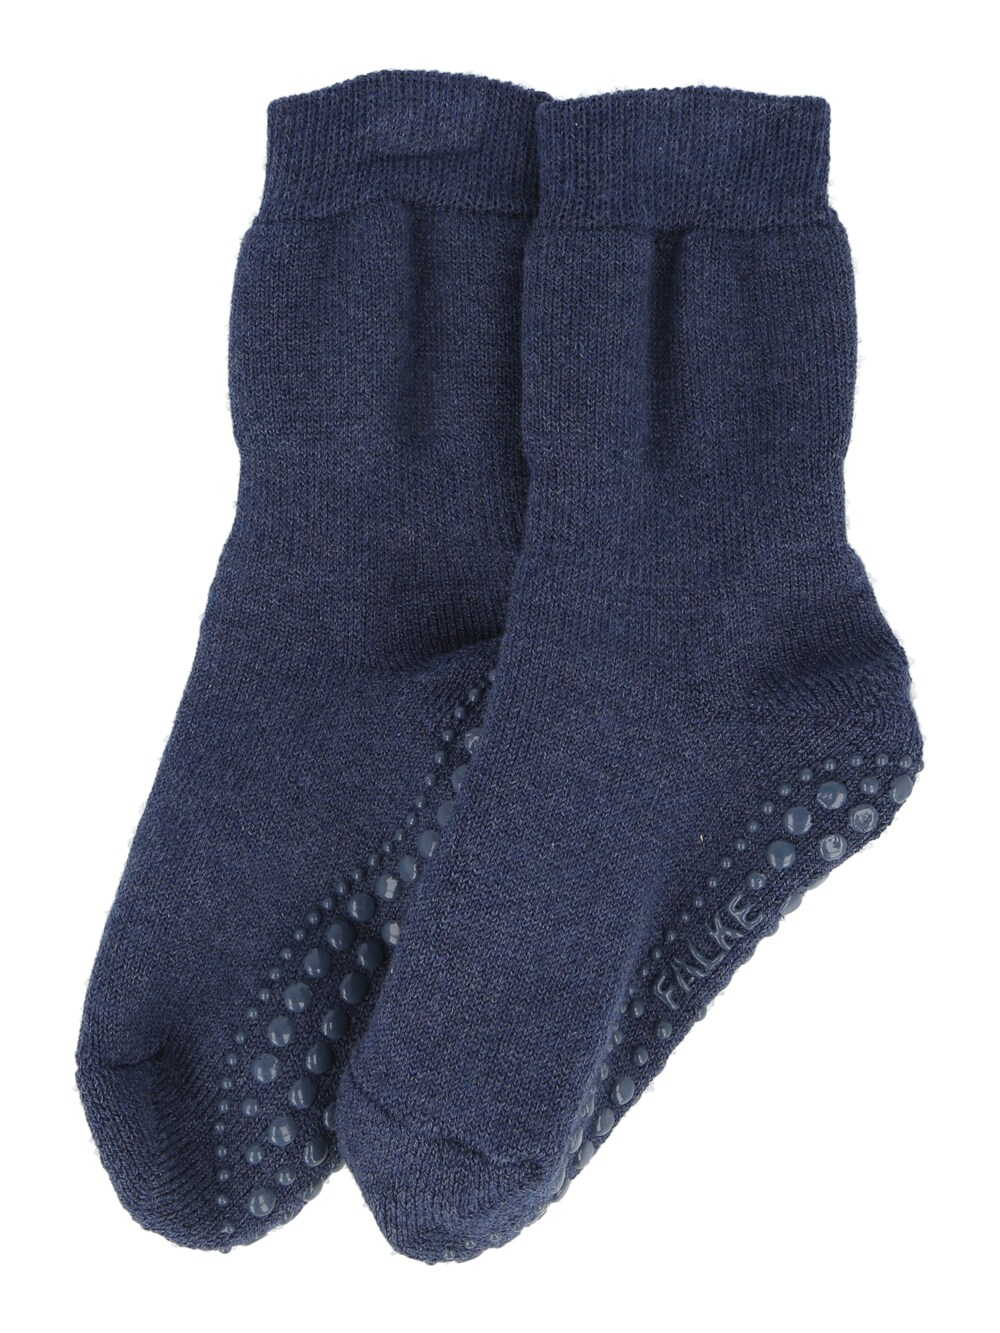 Носки Falke Catspads, пыльный синий